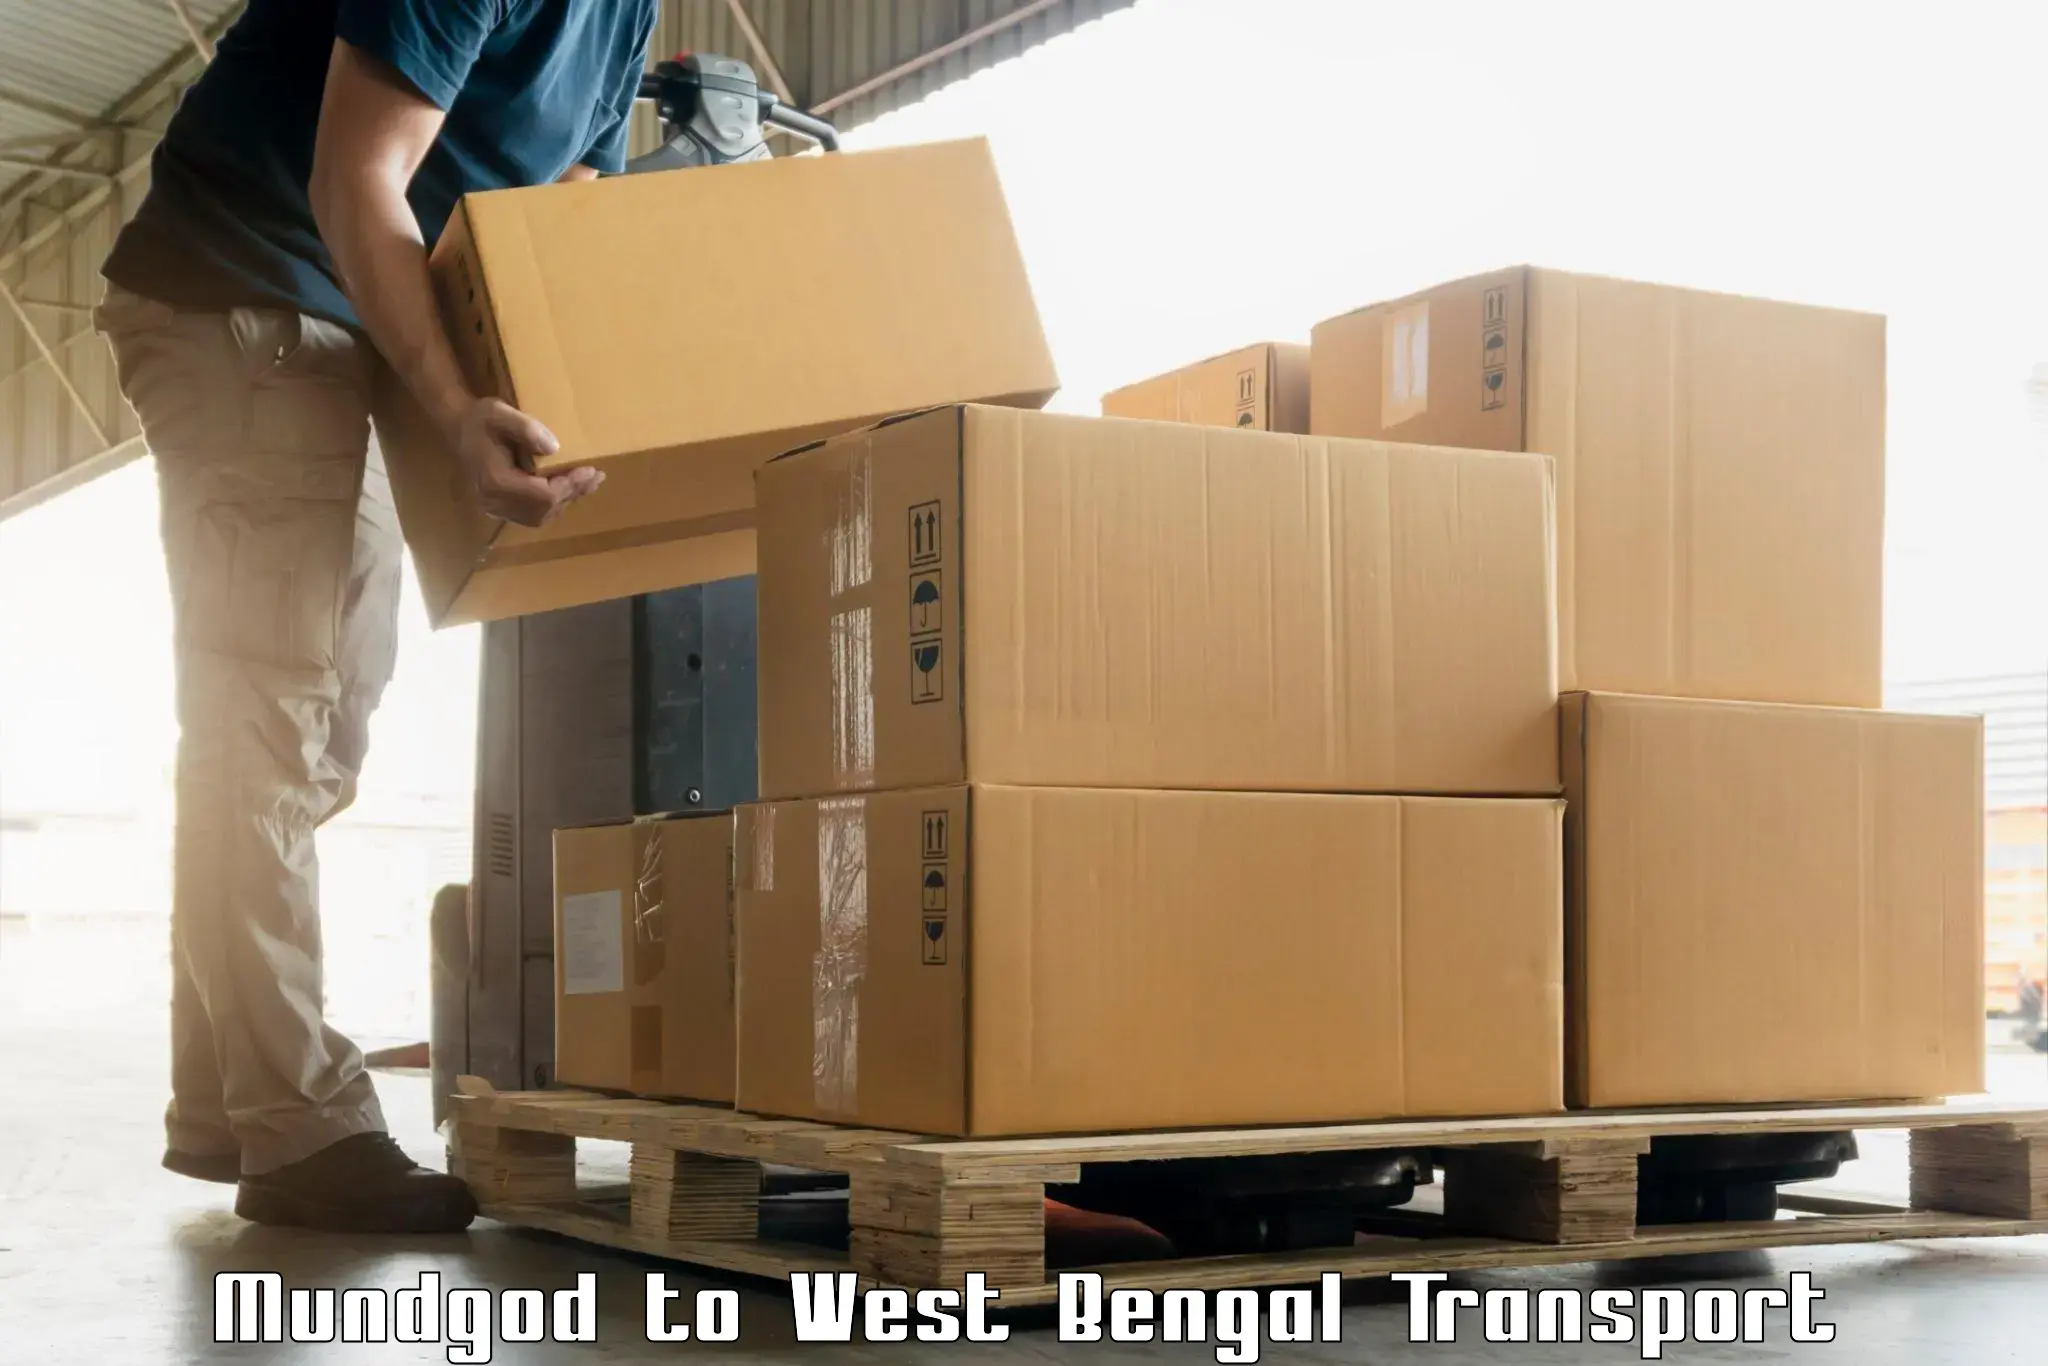 Shipping partner Mundgod to Chapra Krishnanagar